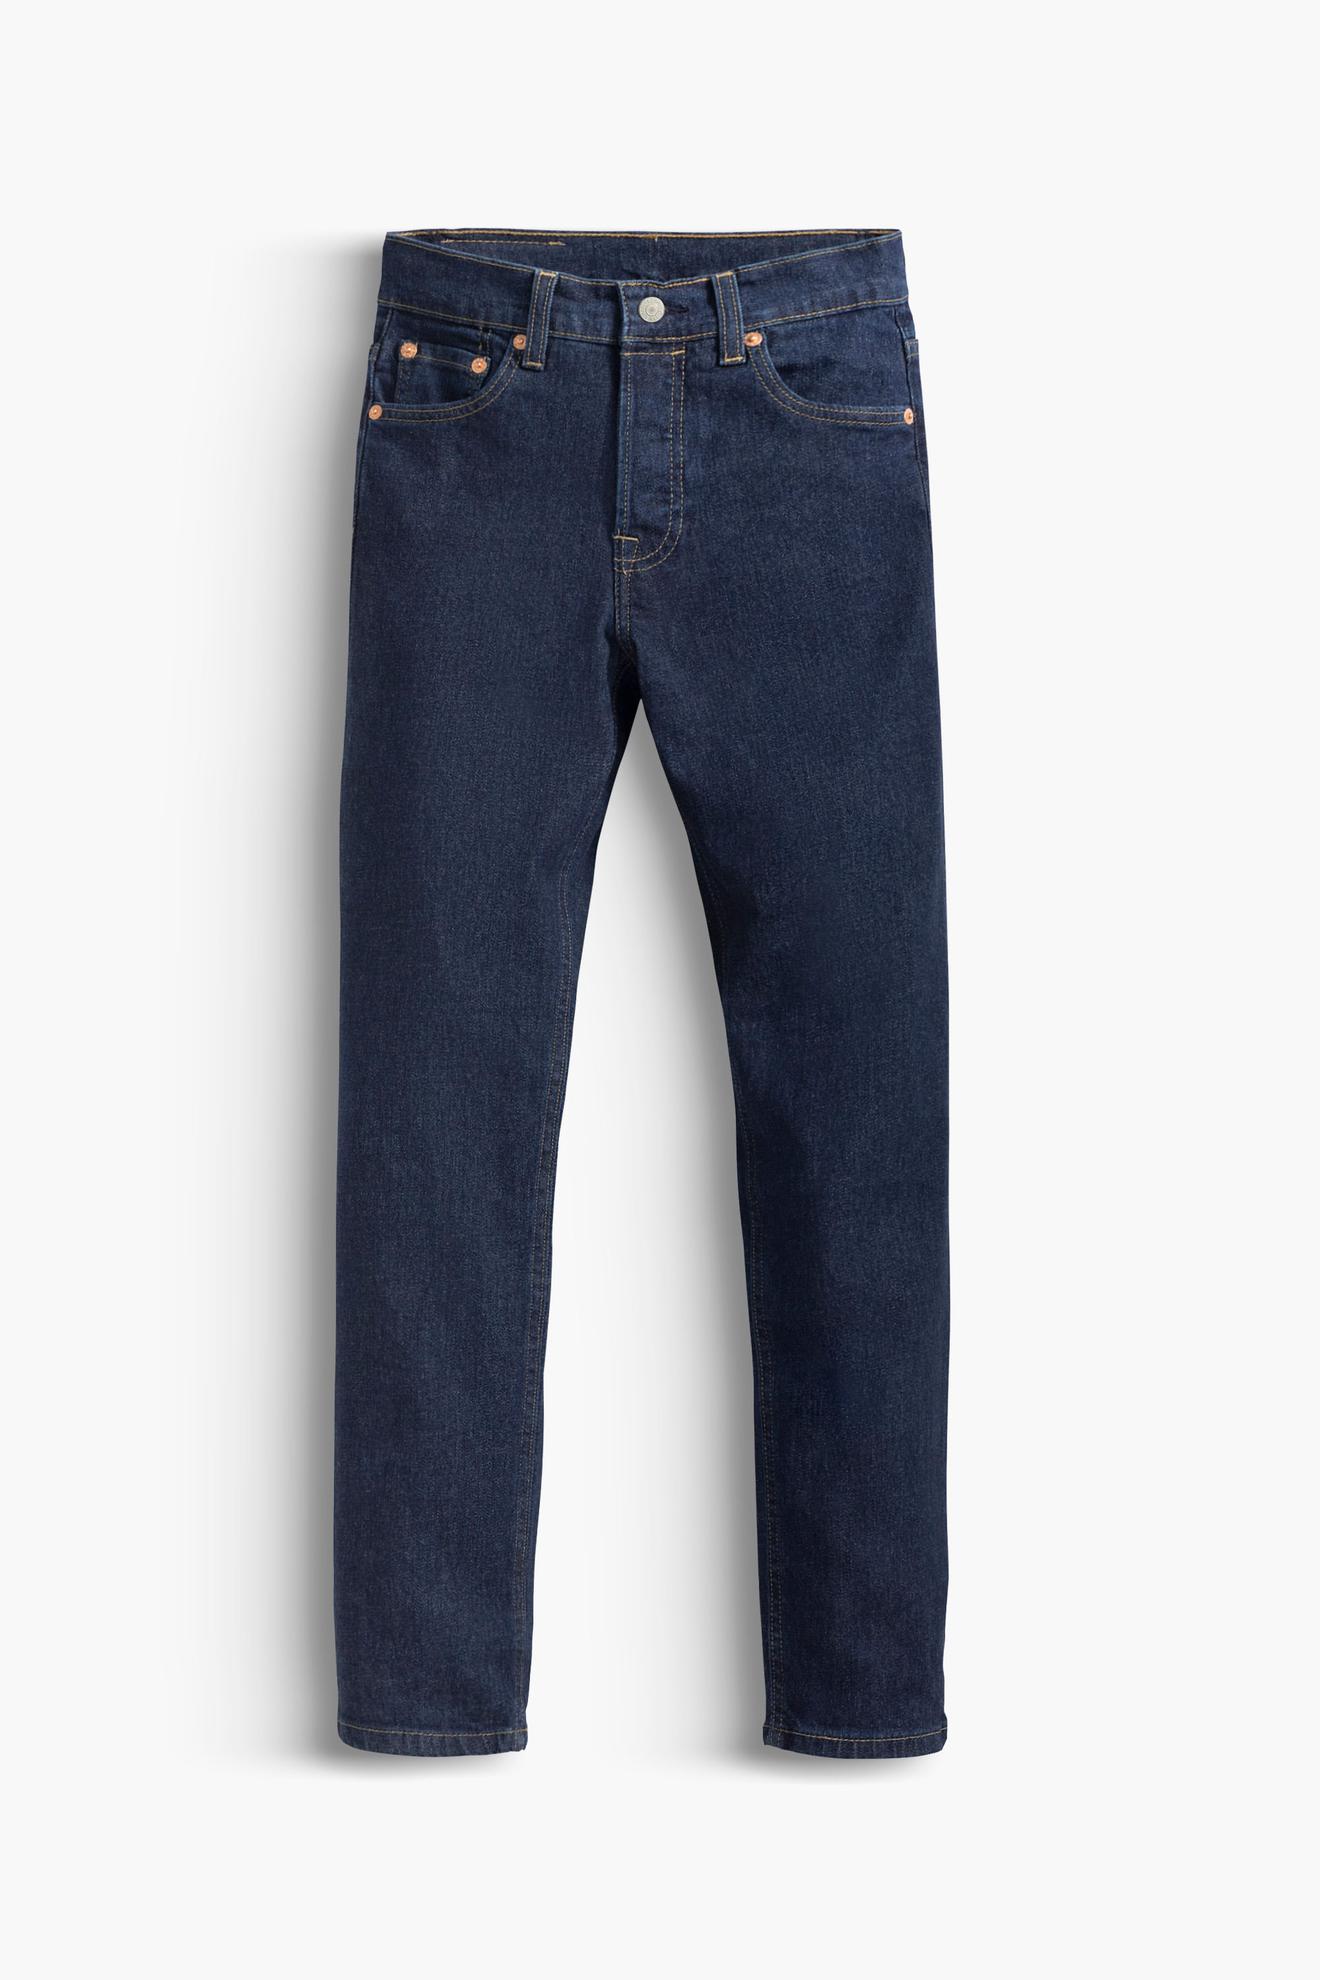 Oferta de Calça Jeans Levi's® 501 Original Denim Infantil por R$149,95 em Levi's